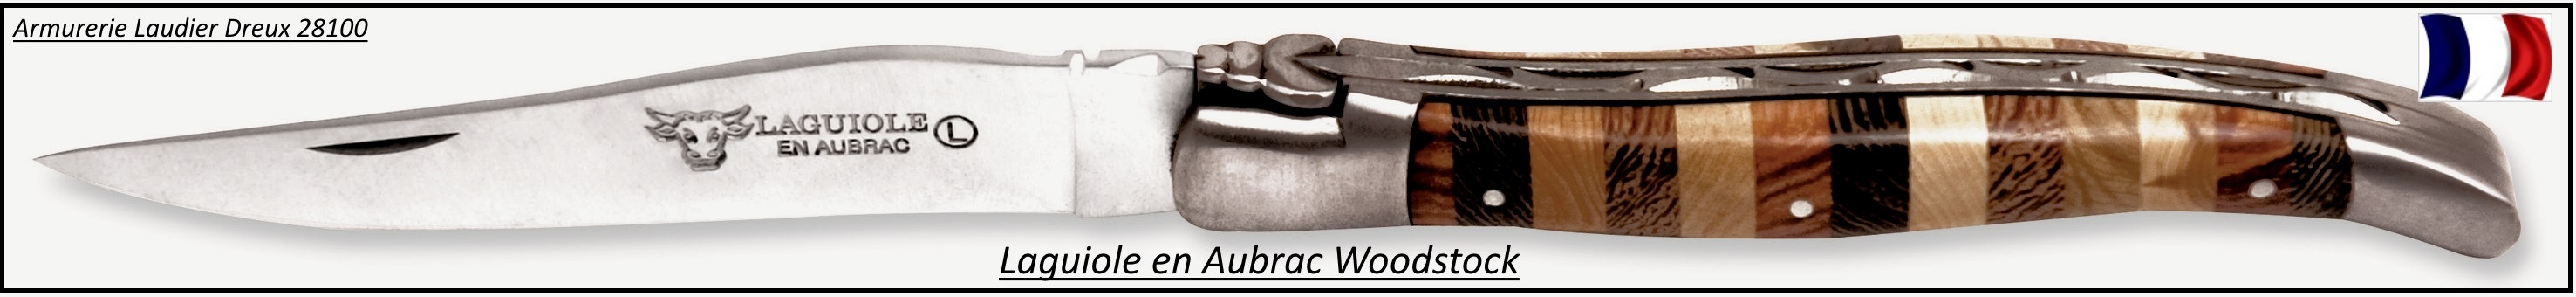  Couteau Laguiole en Aubrac.Mod  Woodstock.Lame de 12 cm .